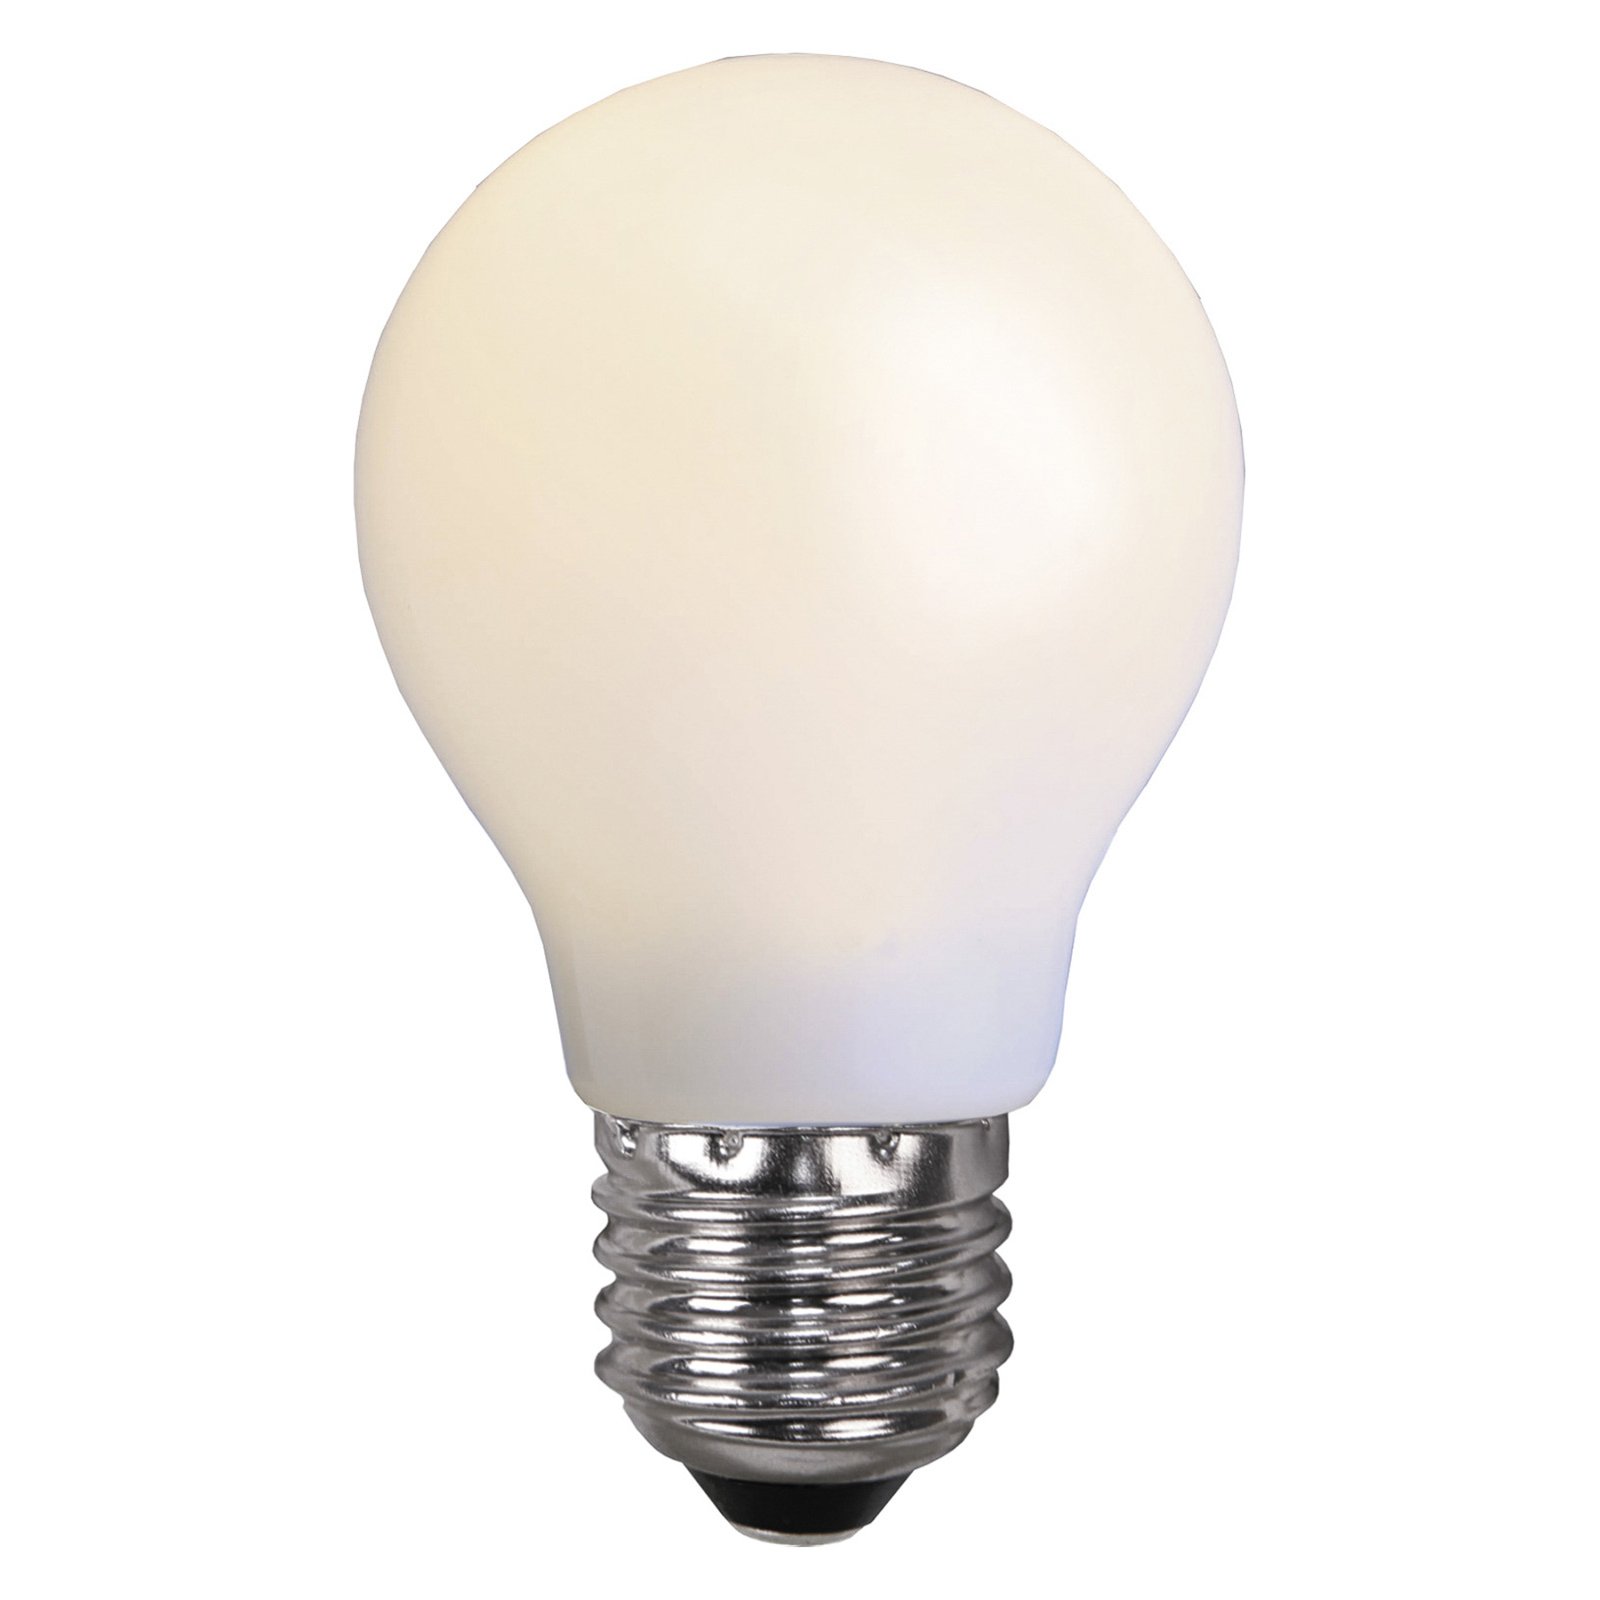 Ampoule LED E27 pour guirlande lumineuse, incassable, blanc